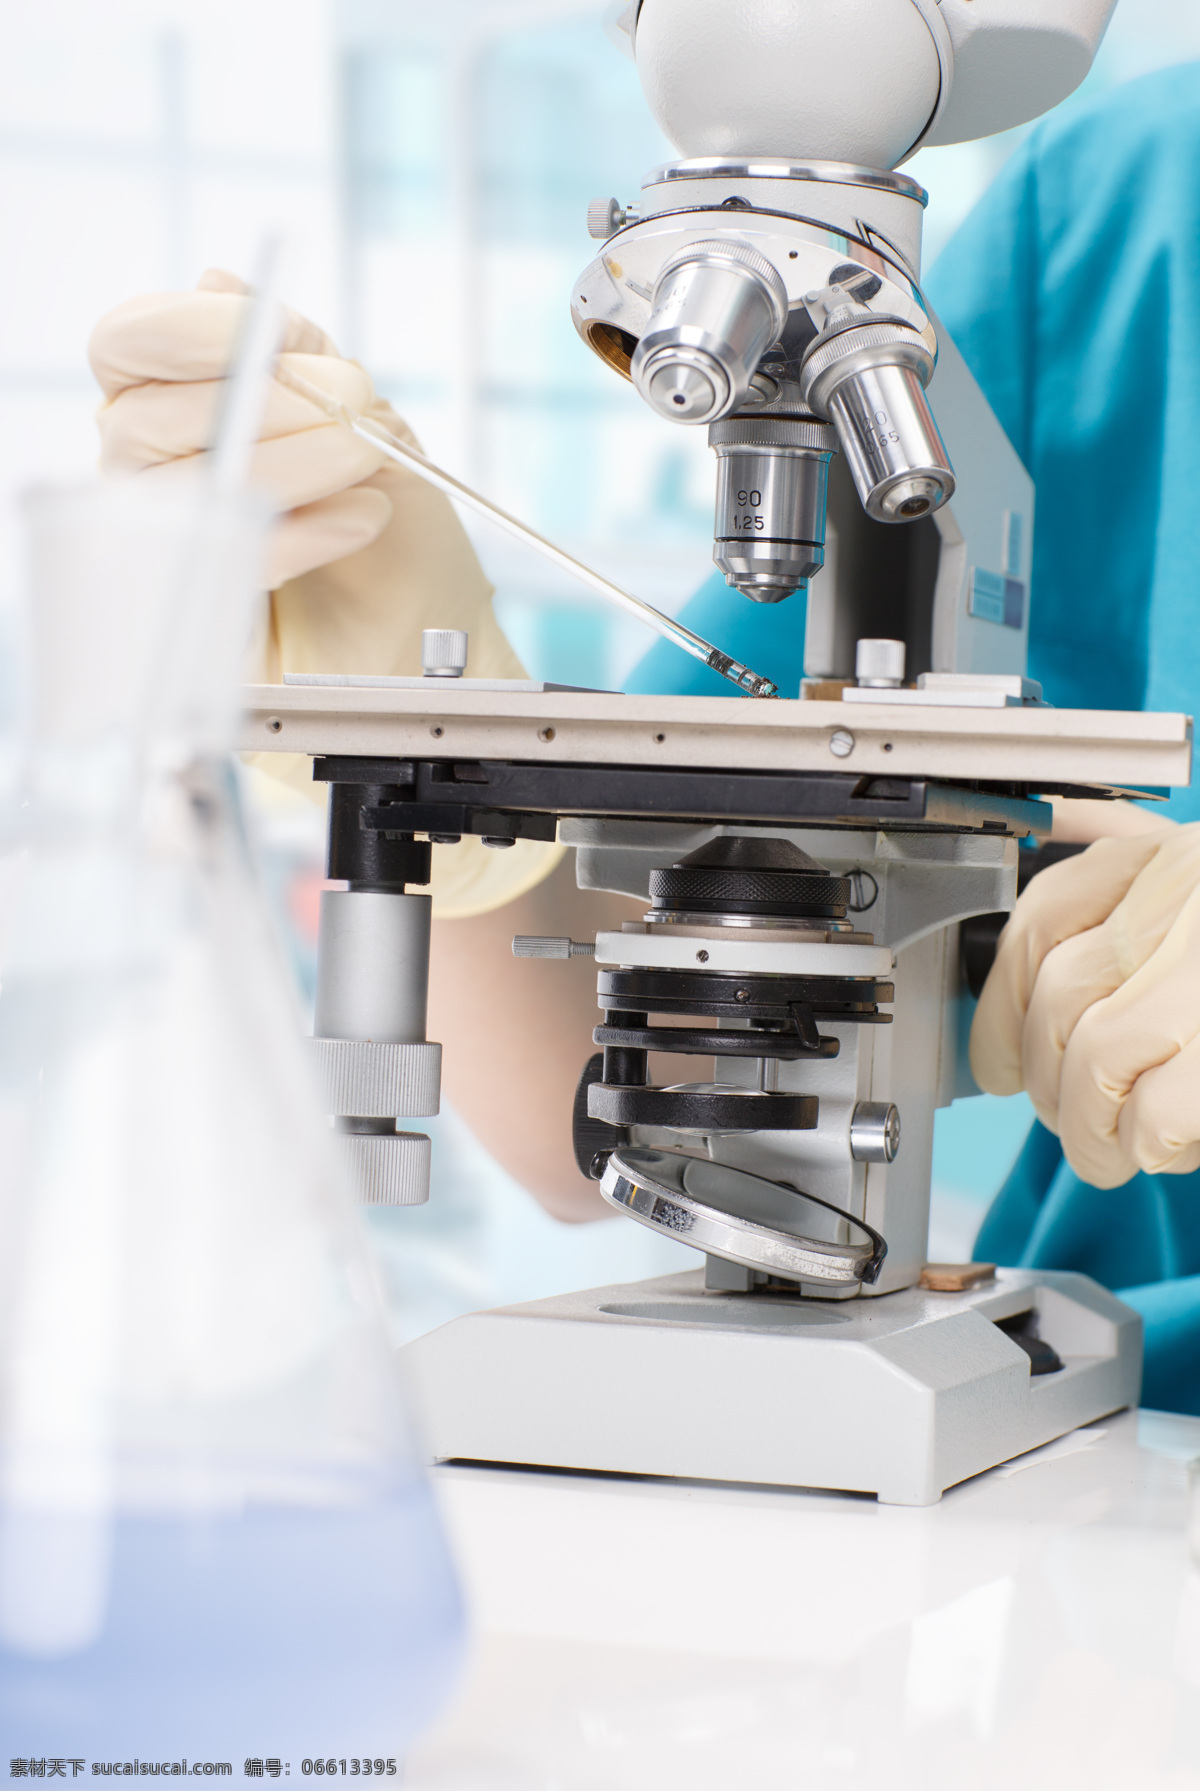 显微镜 分析 烧杯 生物化学 生物学 生物技术 化工 化验师 化学 诊所 临床 发现 现代科技 科学研究 医疗护理